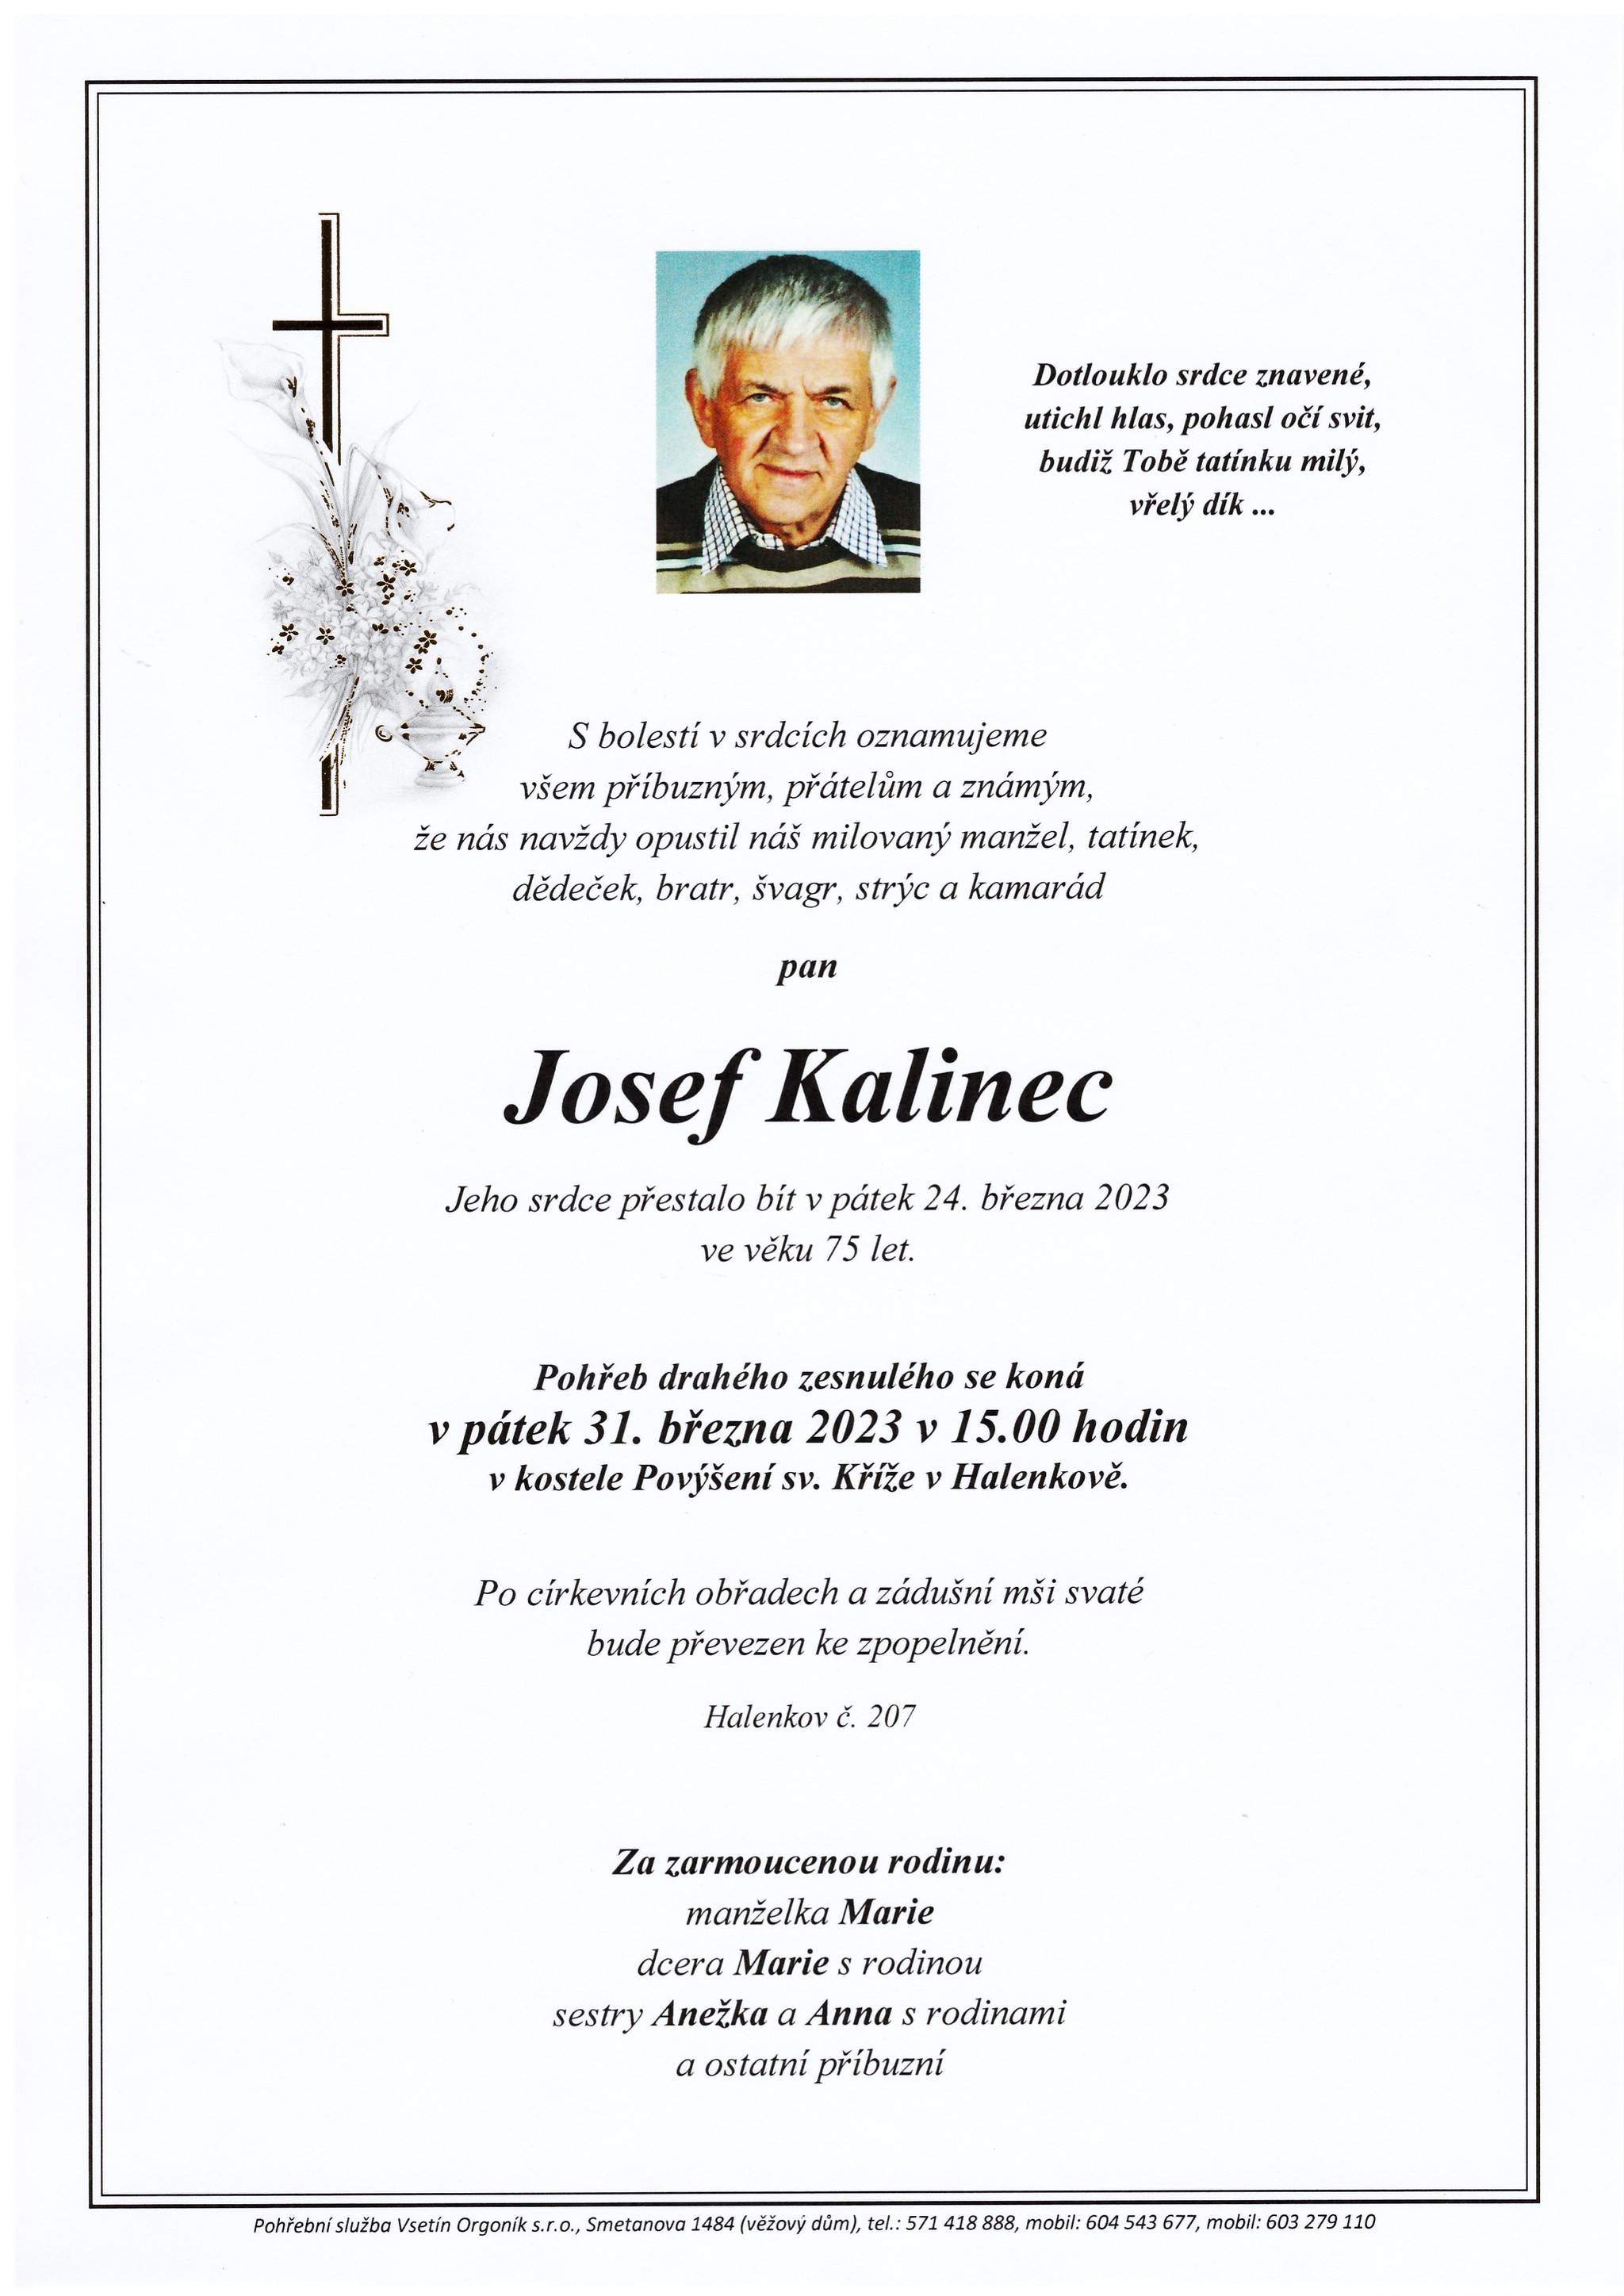 Josef Kalinec